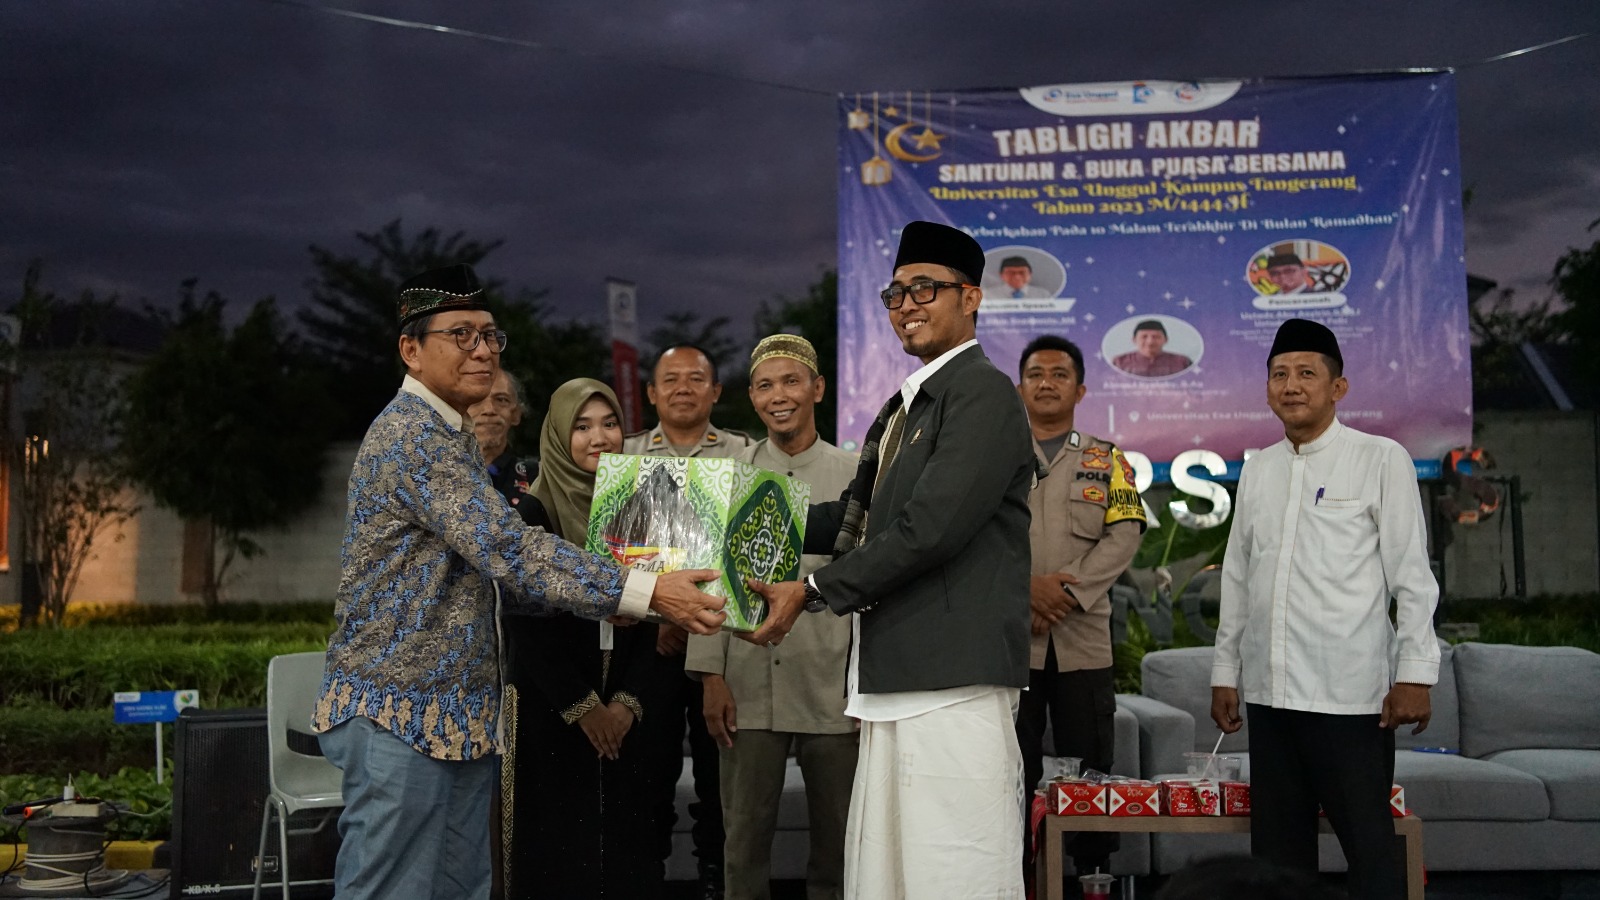 Universitas Esa Unggul Tangerang Gelar Tabligh Akbar Ramadhan